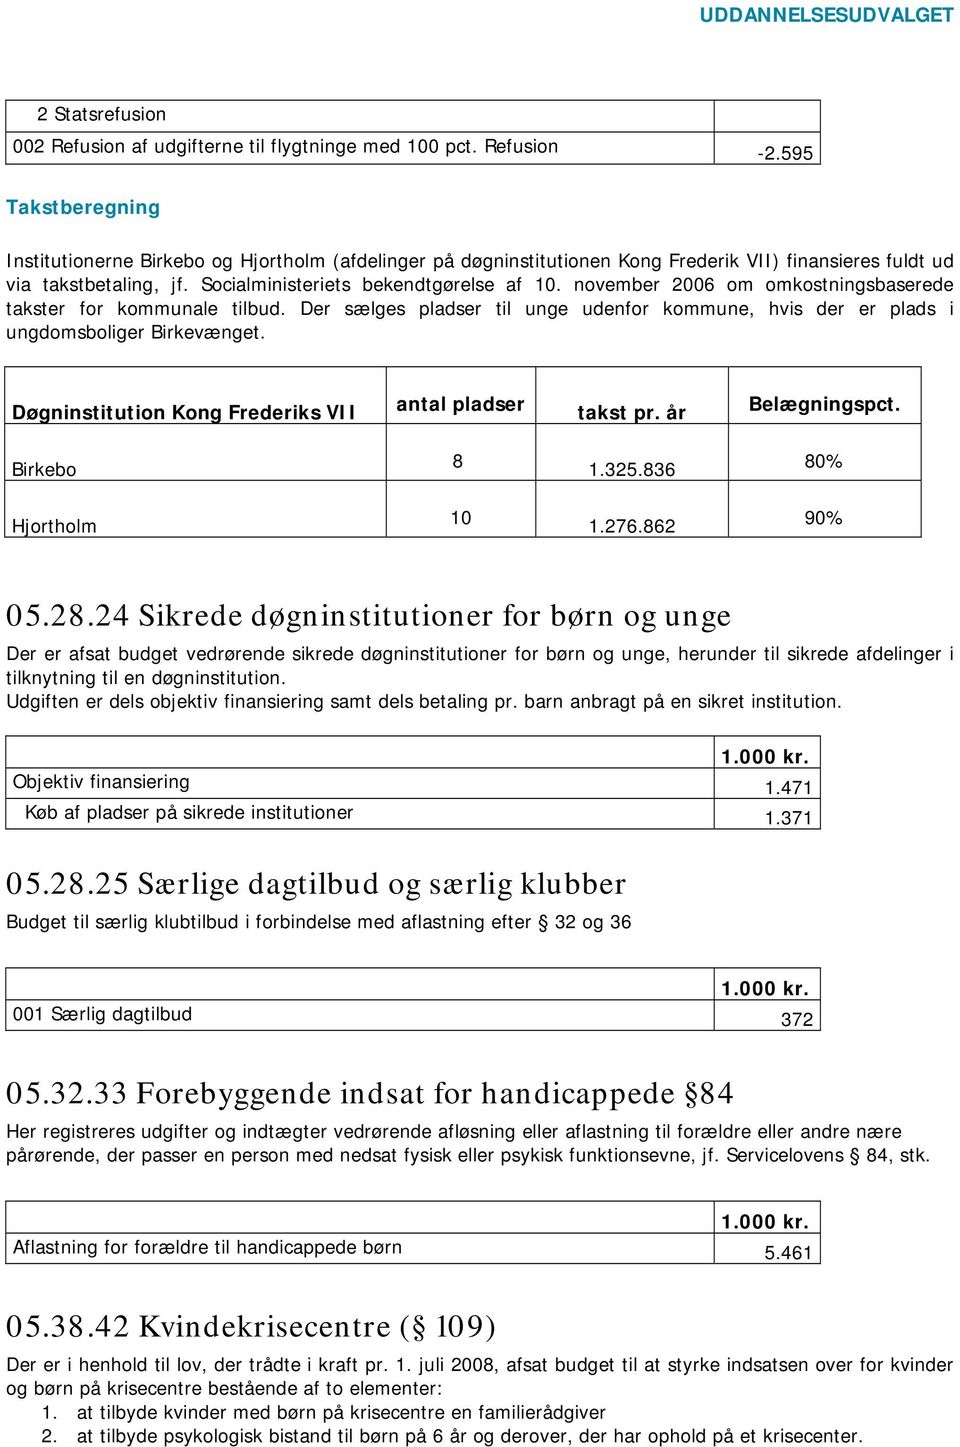 november 2006 om omkostningsbaserede takster for kommunale tilbud. Der sælges pladser til unge udenfor kommune, hvis der er plads i ungdomsboliger Birkevænget.